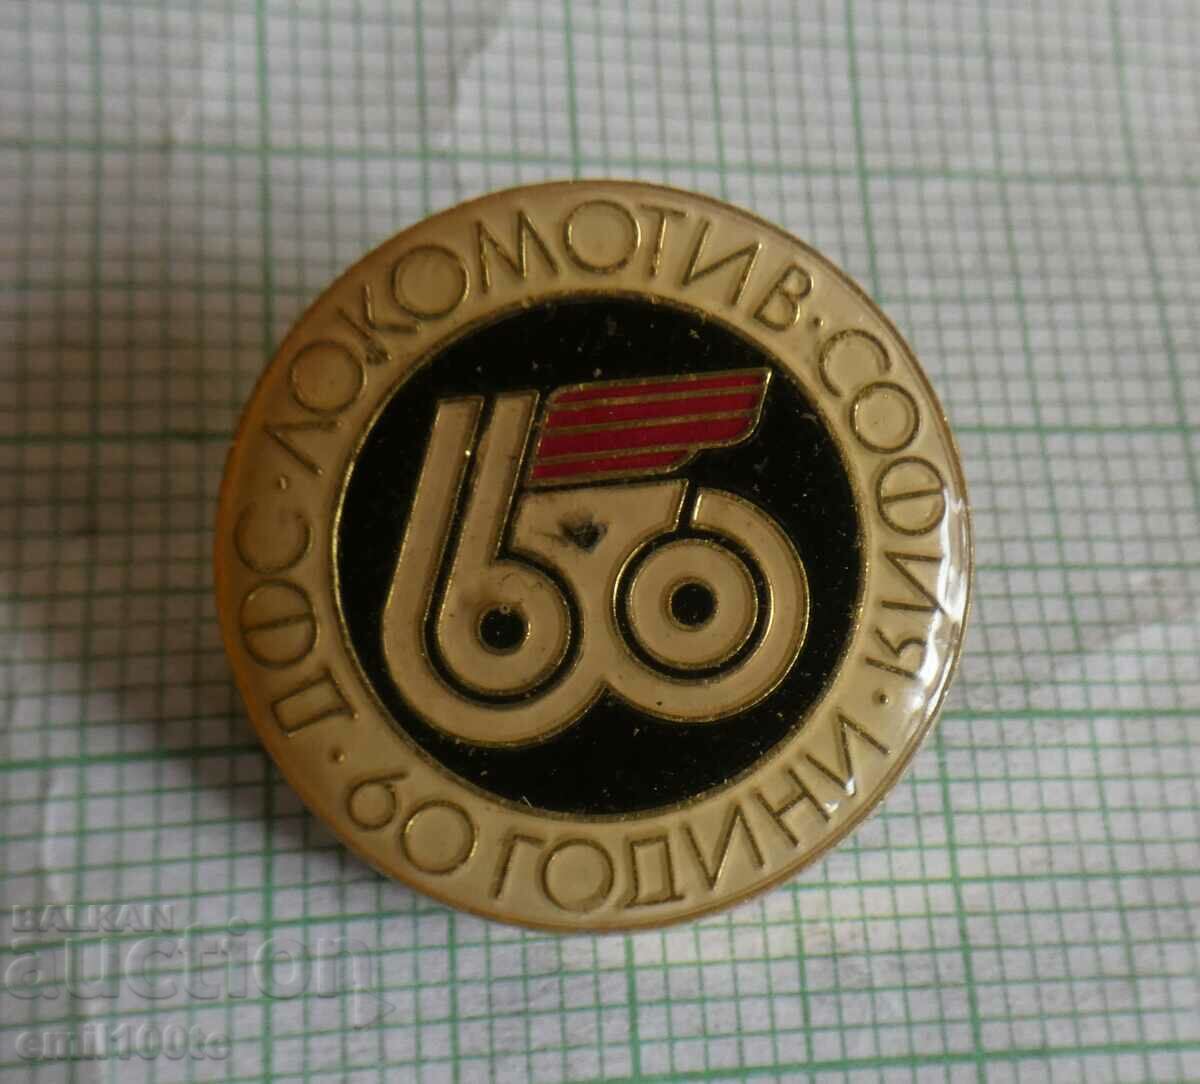 Insigna - 60 de ani FTZ Lokomotiv Sofia